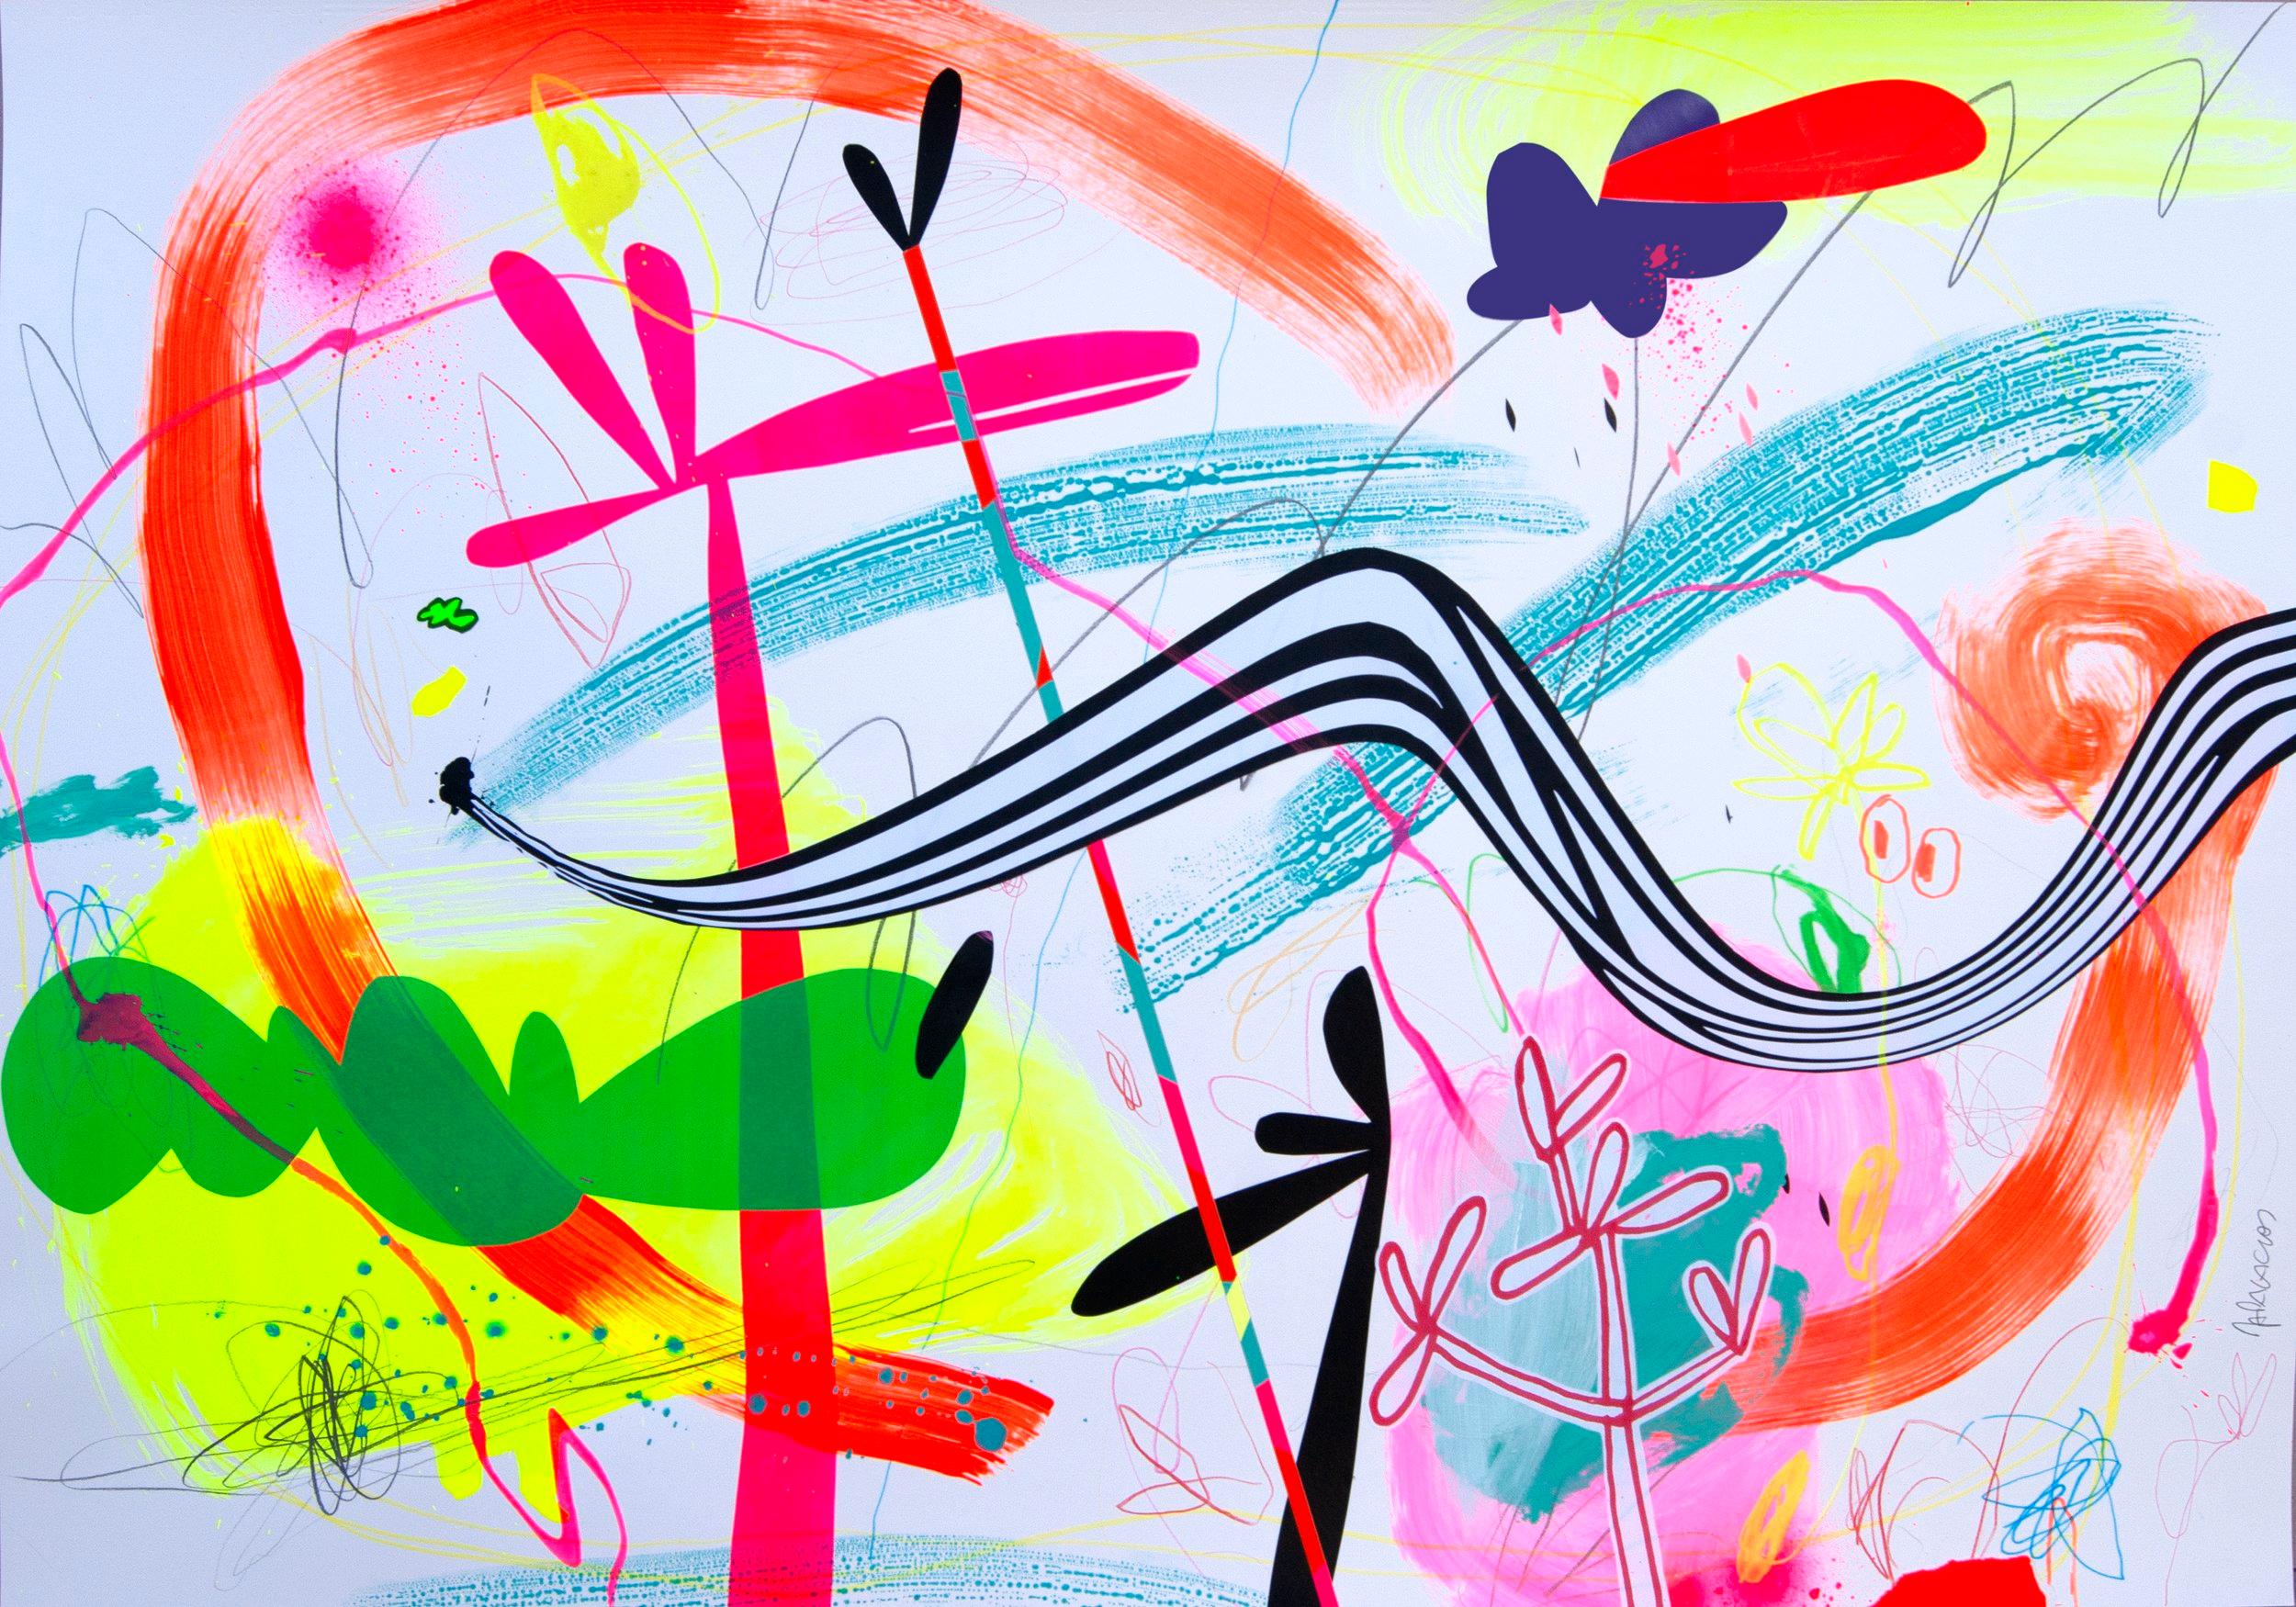 In diesem Original mit Acrylfarbe und Vinyl auf Papier der Art Angler Gallery stellt Jose Palacios einen abstrakten Pop-Art-Stil dar. Er verwendet leuchtend rosa, weiße, grüne, blaue, schwarze und rote Formen, um seine Komposition aus "tropischen